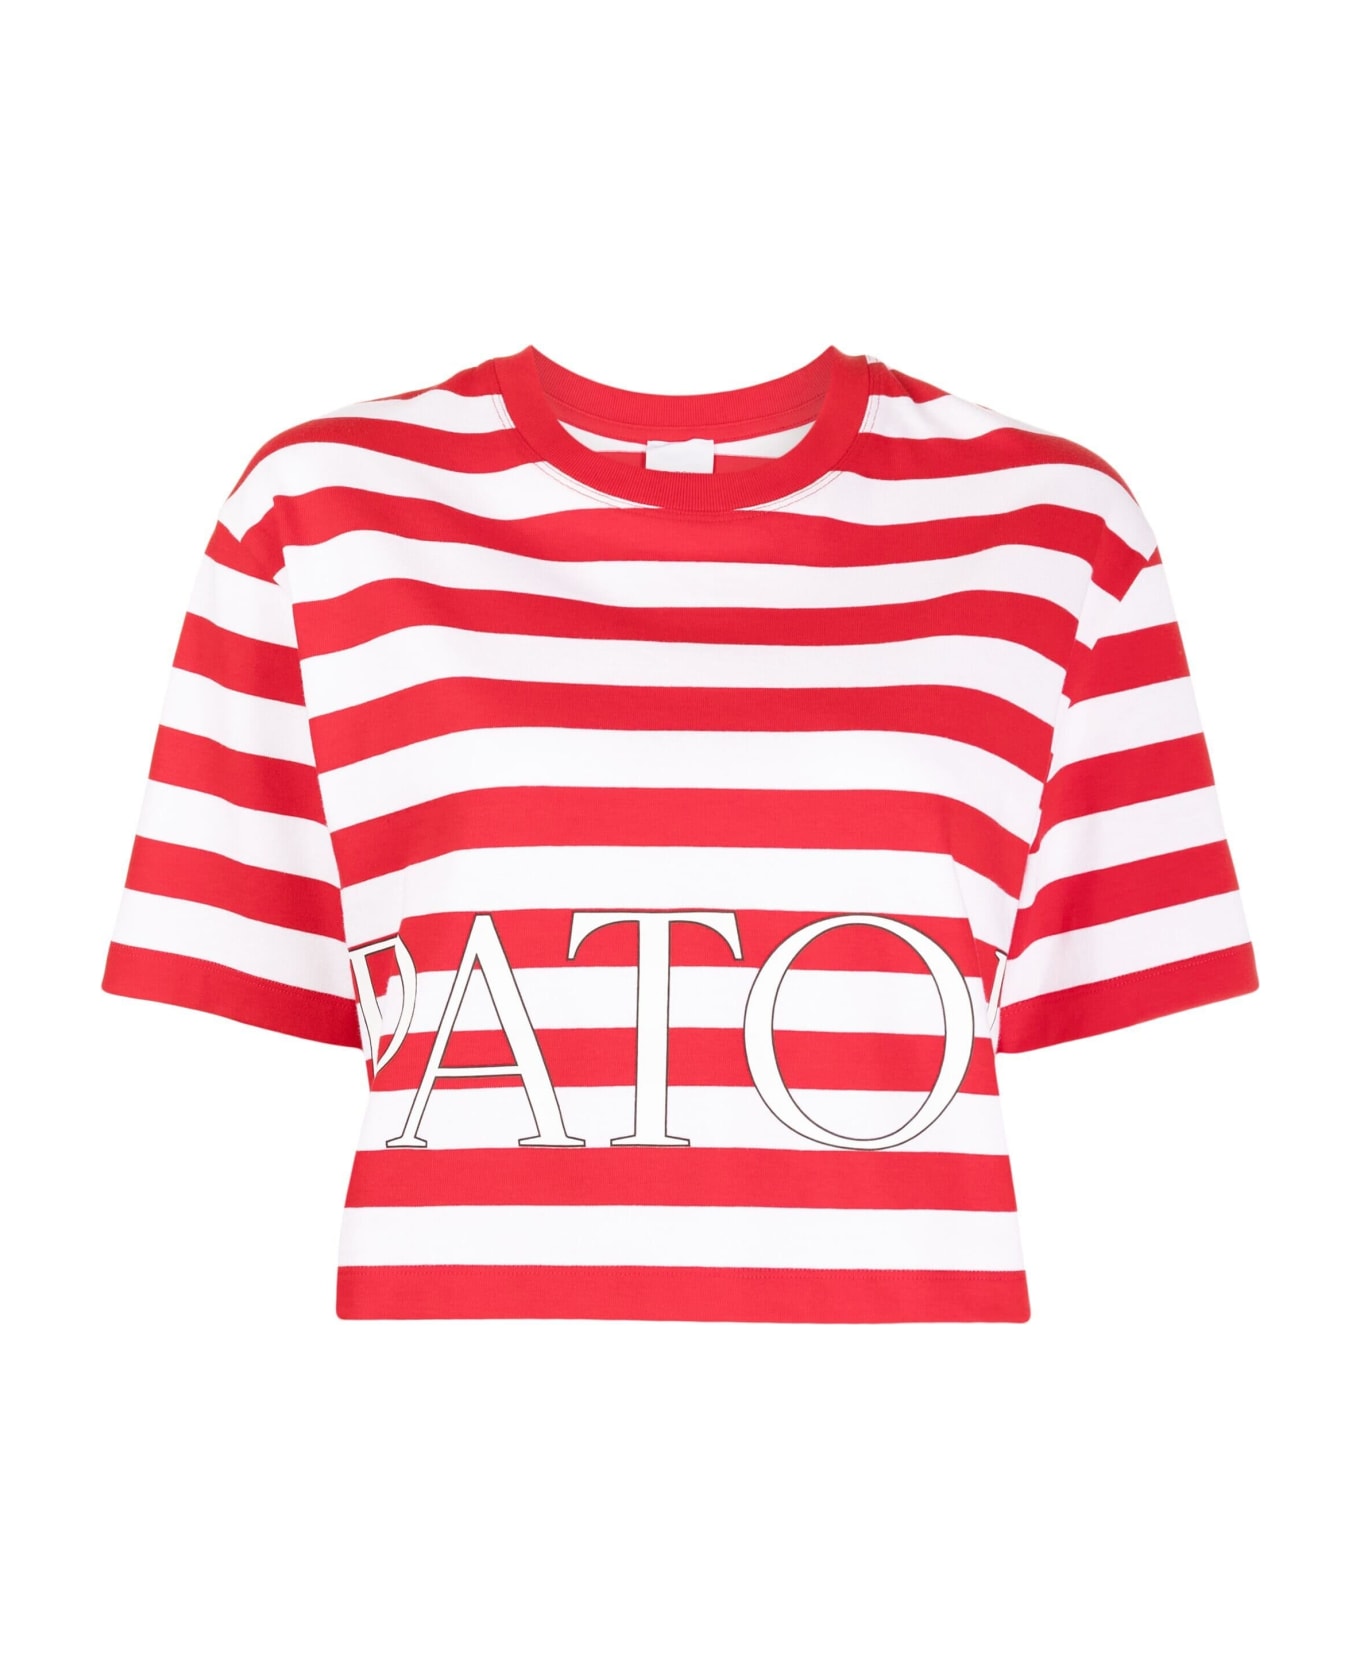 Patou T Shirt M/m - R Red White